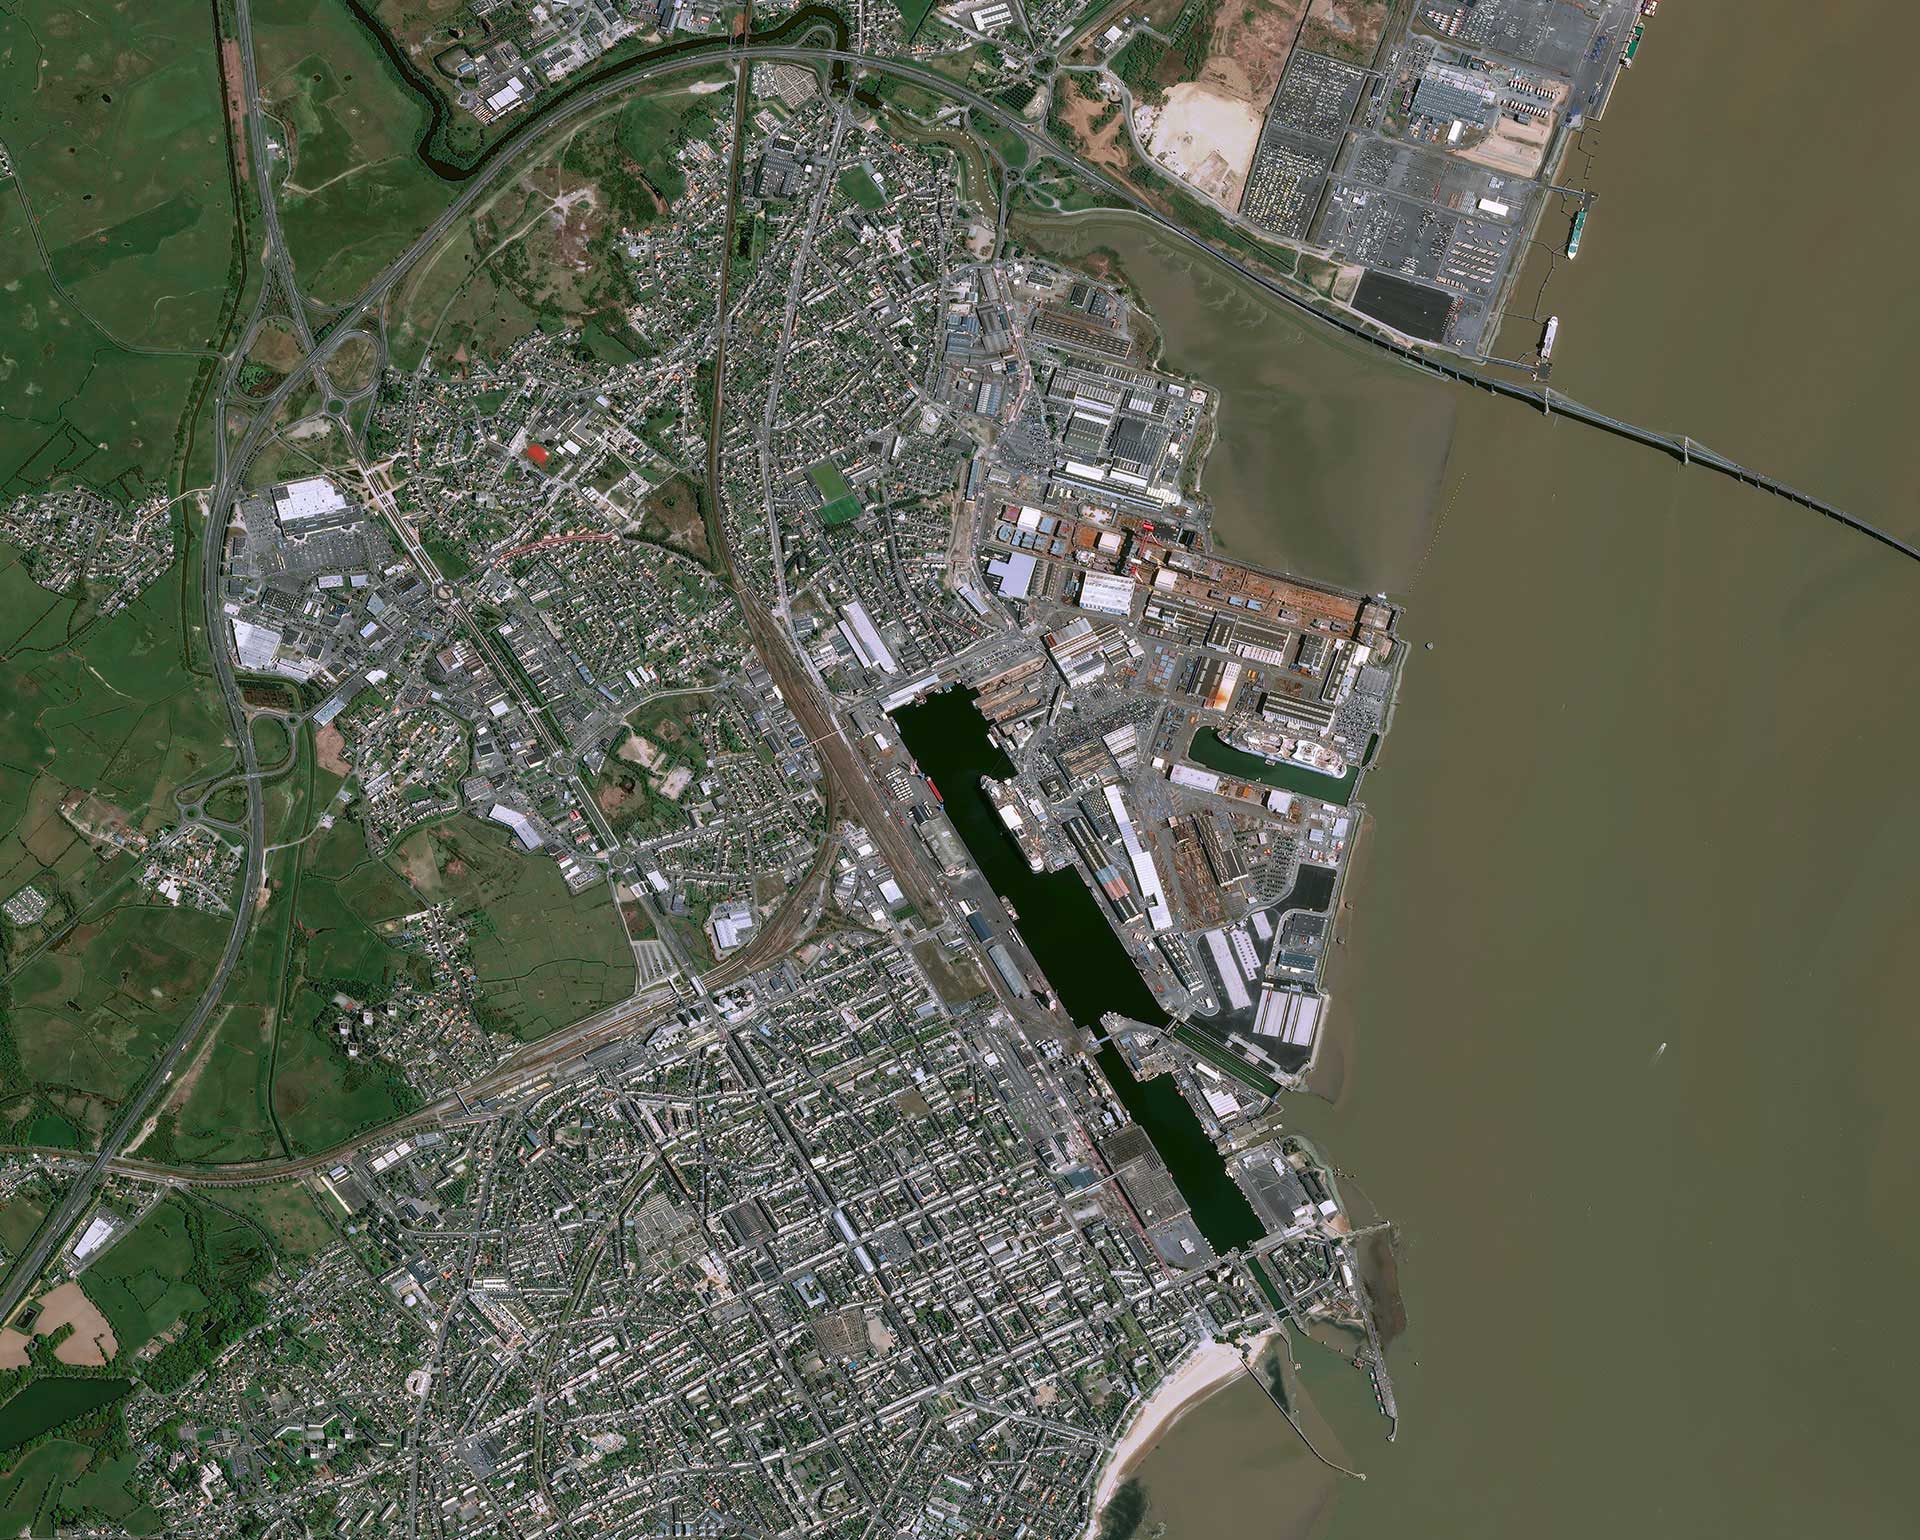 Port de Saint Nazaire vu par le satellite Pléiades. En raison de certaines activités sensibles, notamment énergétiques, les zones portuaires font l’objet d’une surveillance toute particulière de l’INERIS.